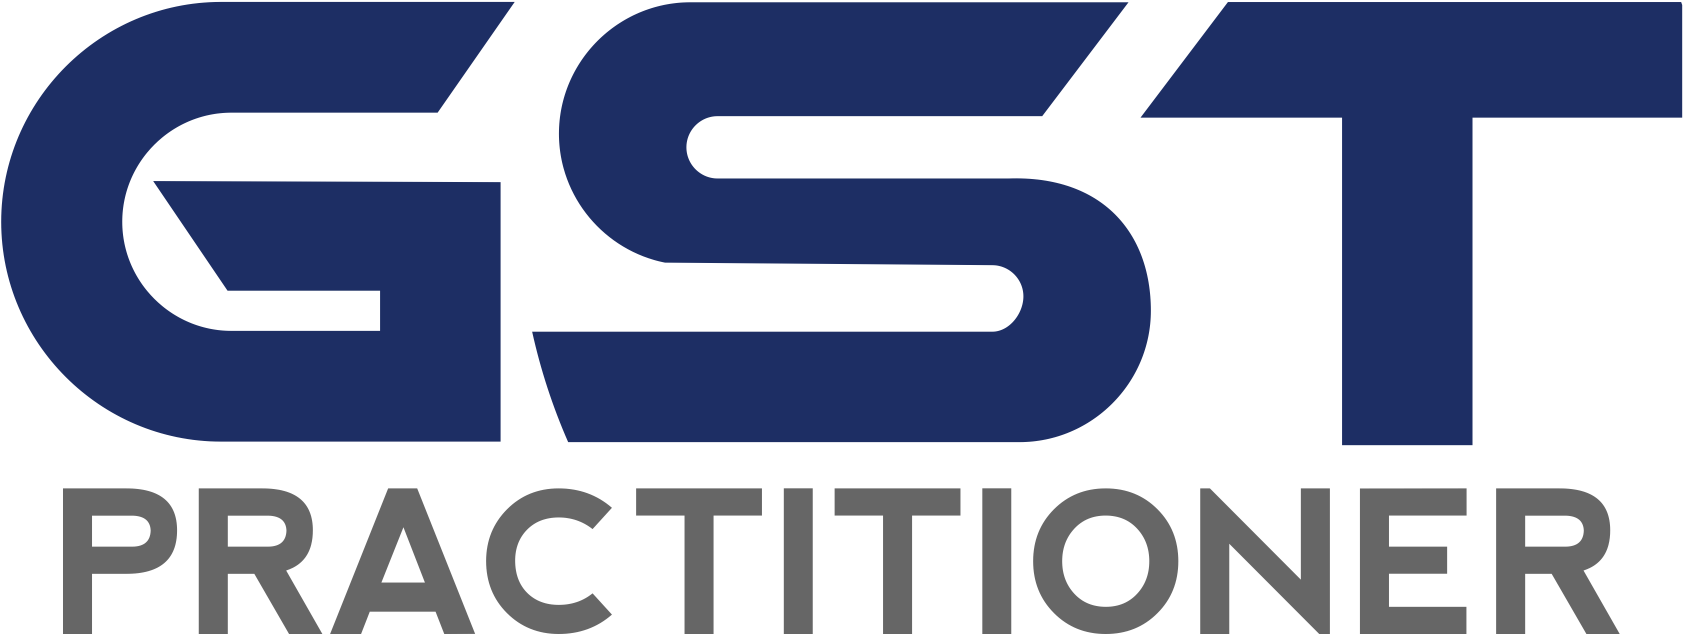 G S T Practitioner Logo PNG